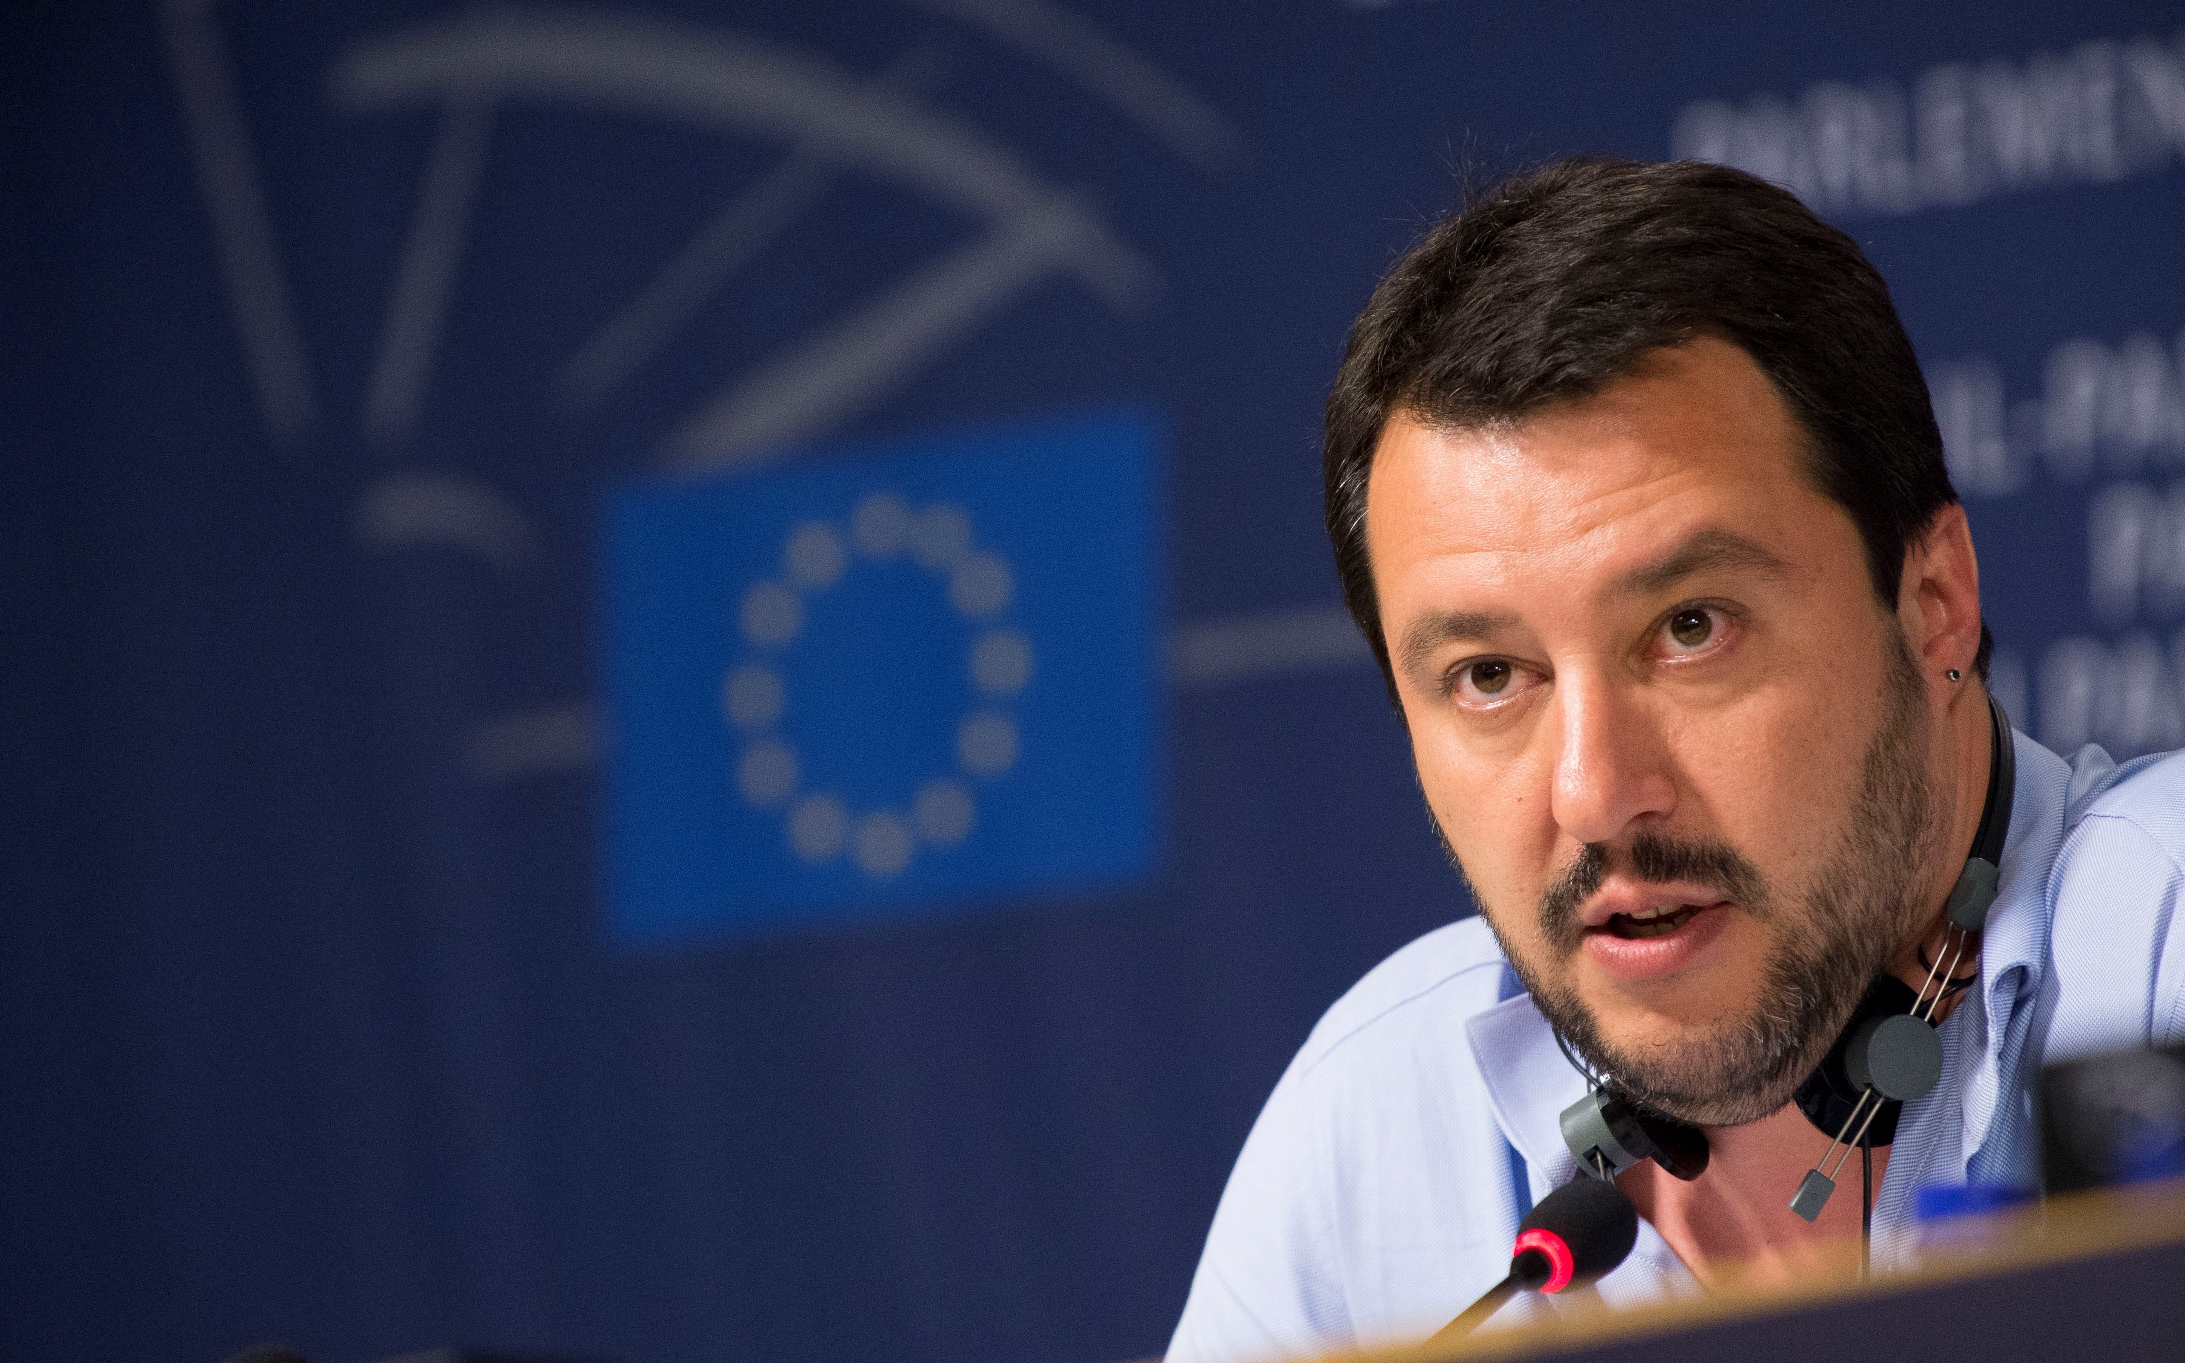 Matteo Salvini se ujal vedení Ligy severu před rokem a už dnes se může vykázat působivými výsledky